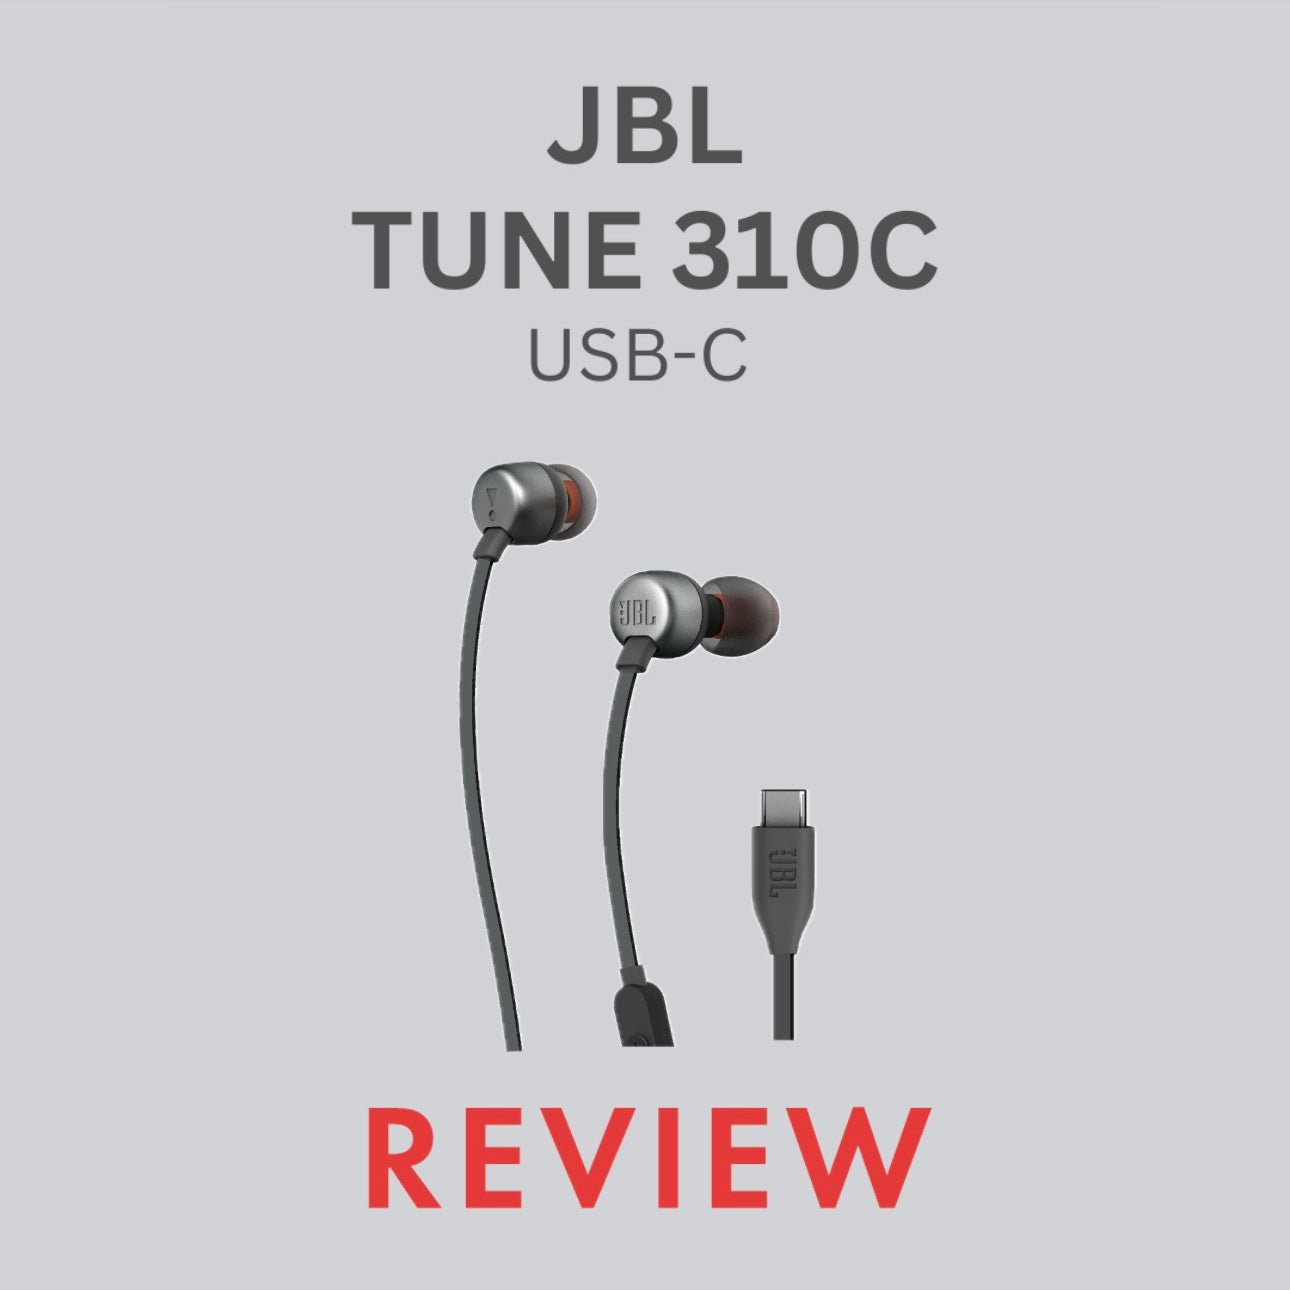 JBL TUNE 310C REVIEW